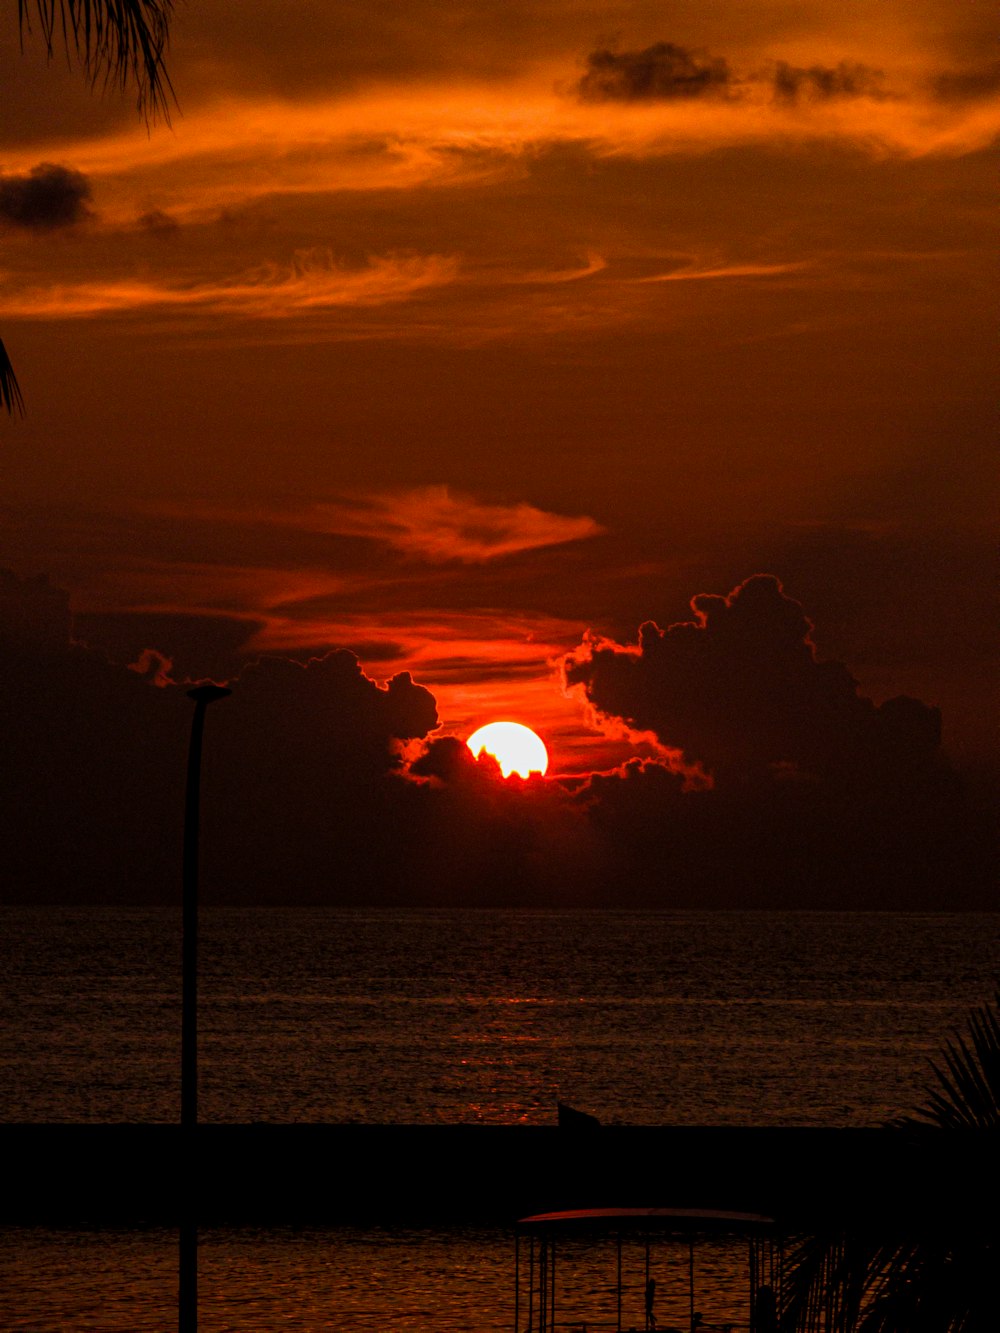 Le soleil se couche sur l’océan avec un bateau au premier plan